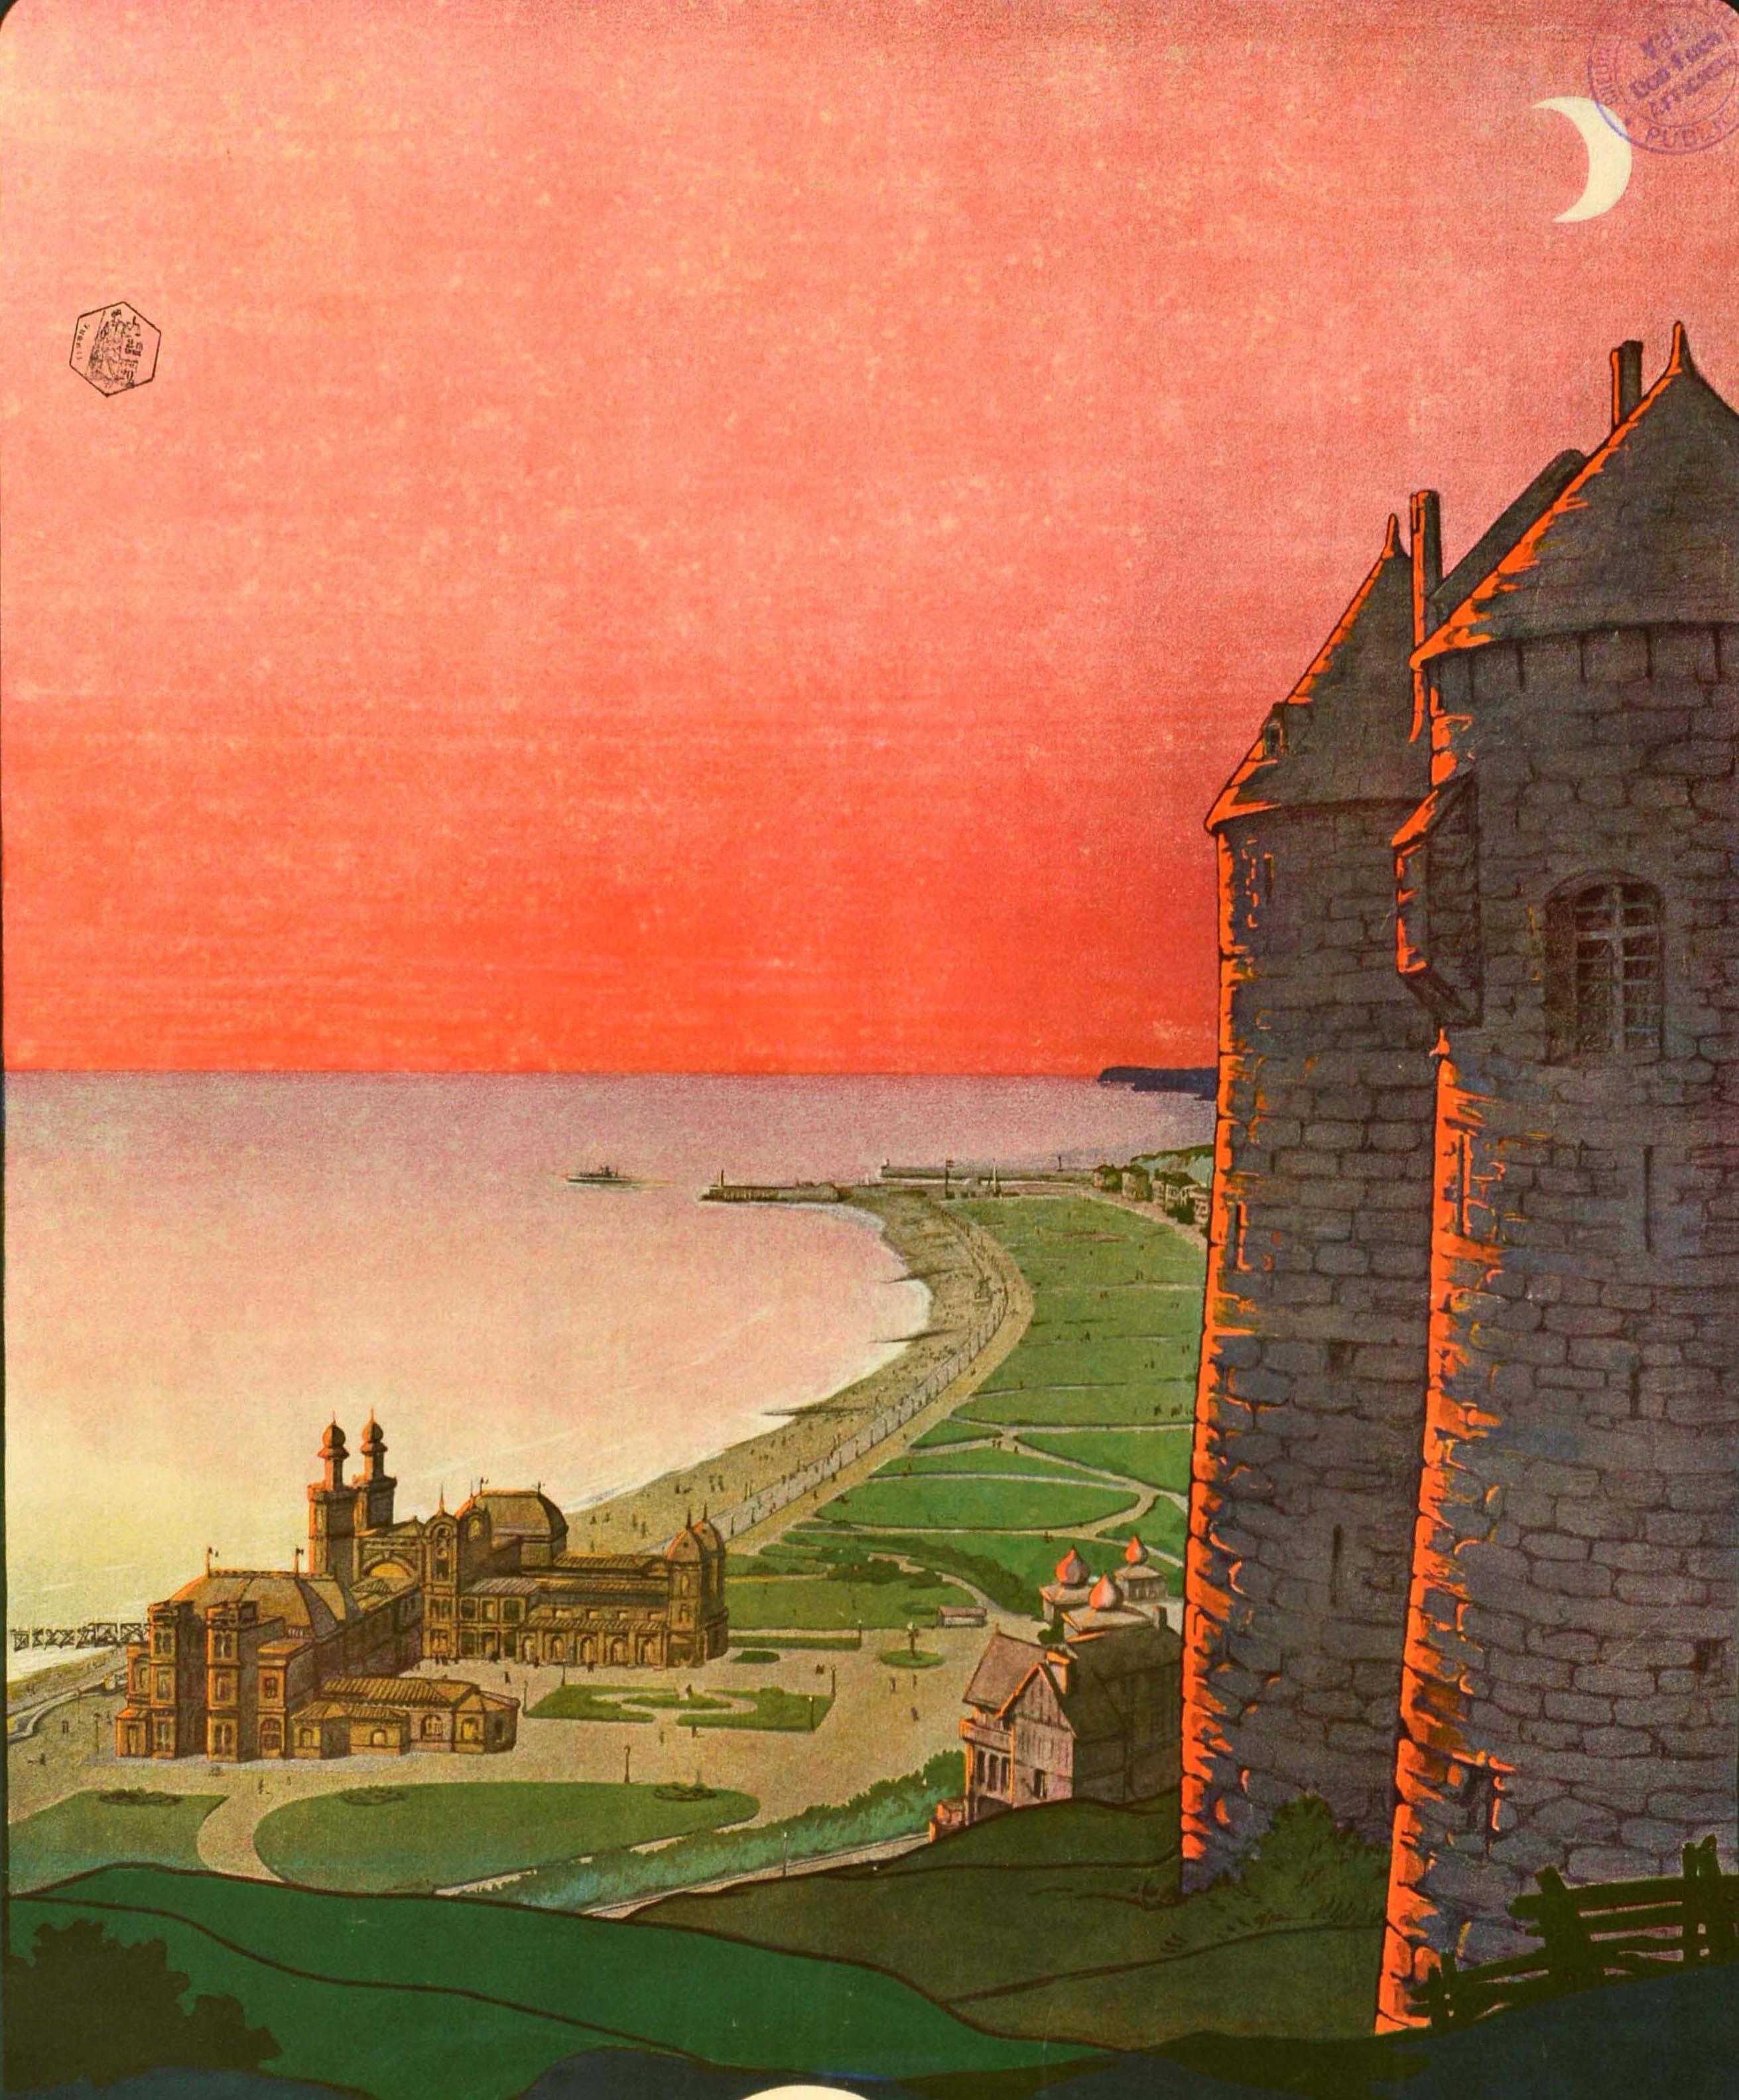 Affiche de voyage originale pour Dieppe, réalisée par Georges Dorival (1879-1968), représentant une vue panoramique de la ville avec ses parcs et ses plages sur la côte normande depuis le château historique de Dieppe, la lueur du coucher de soleil